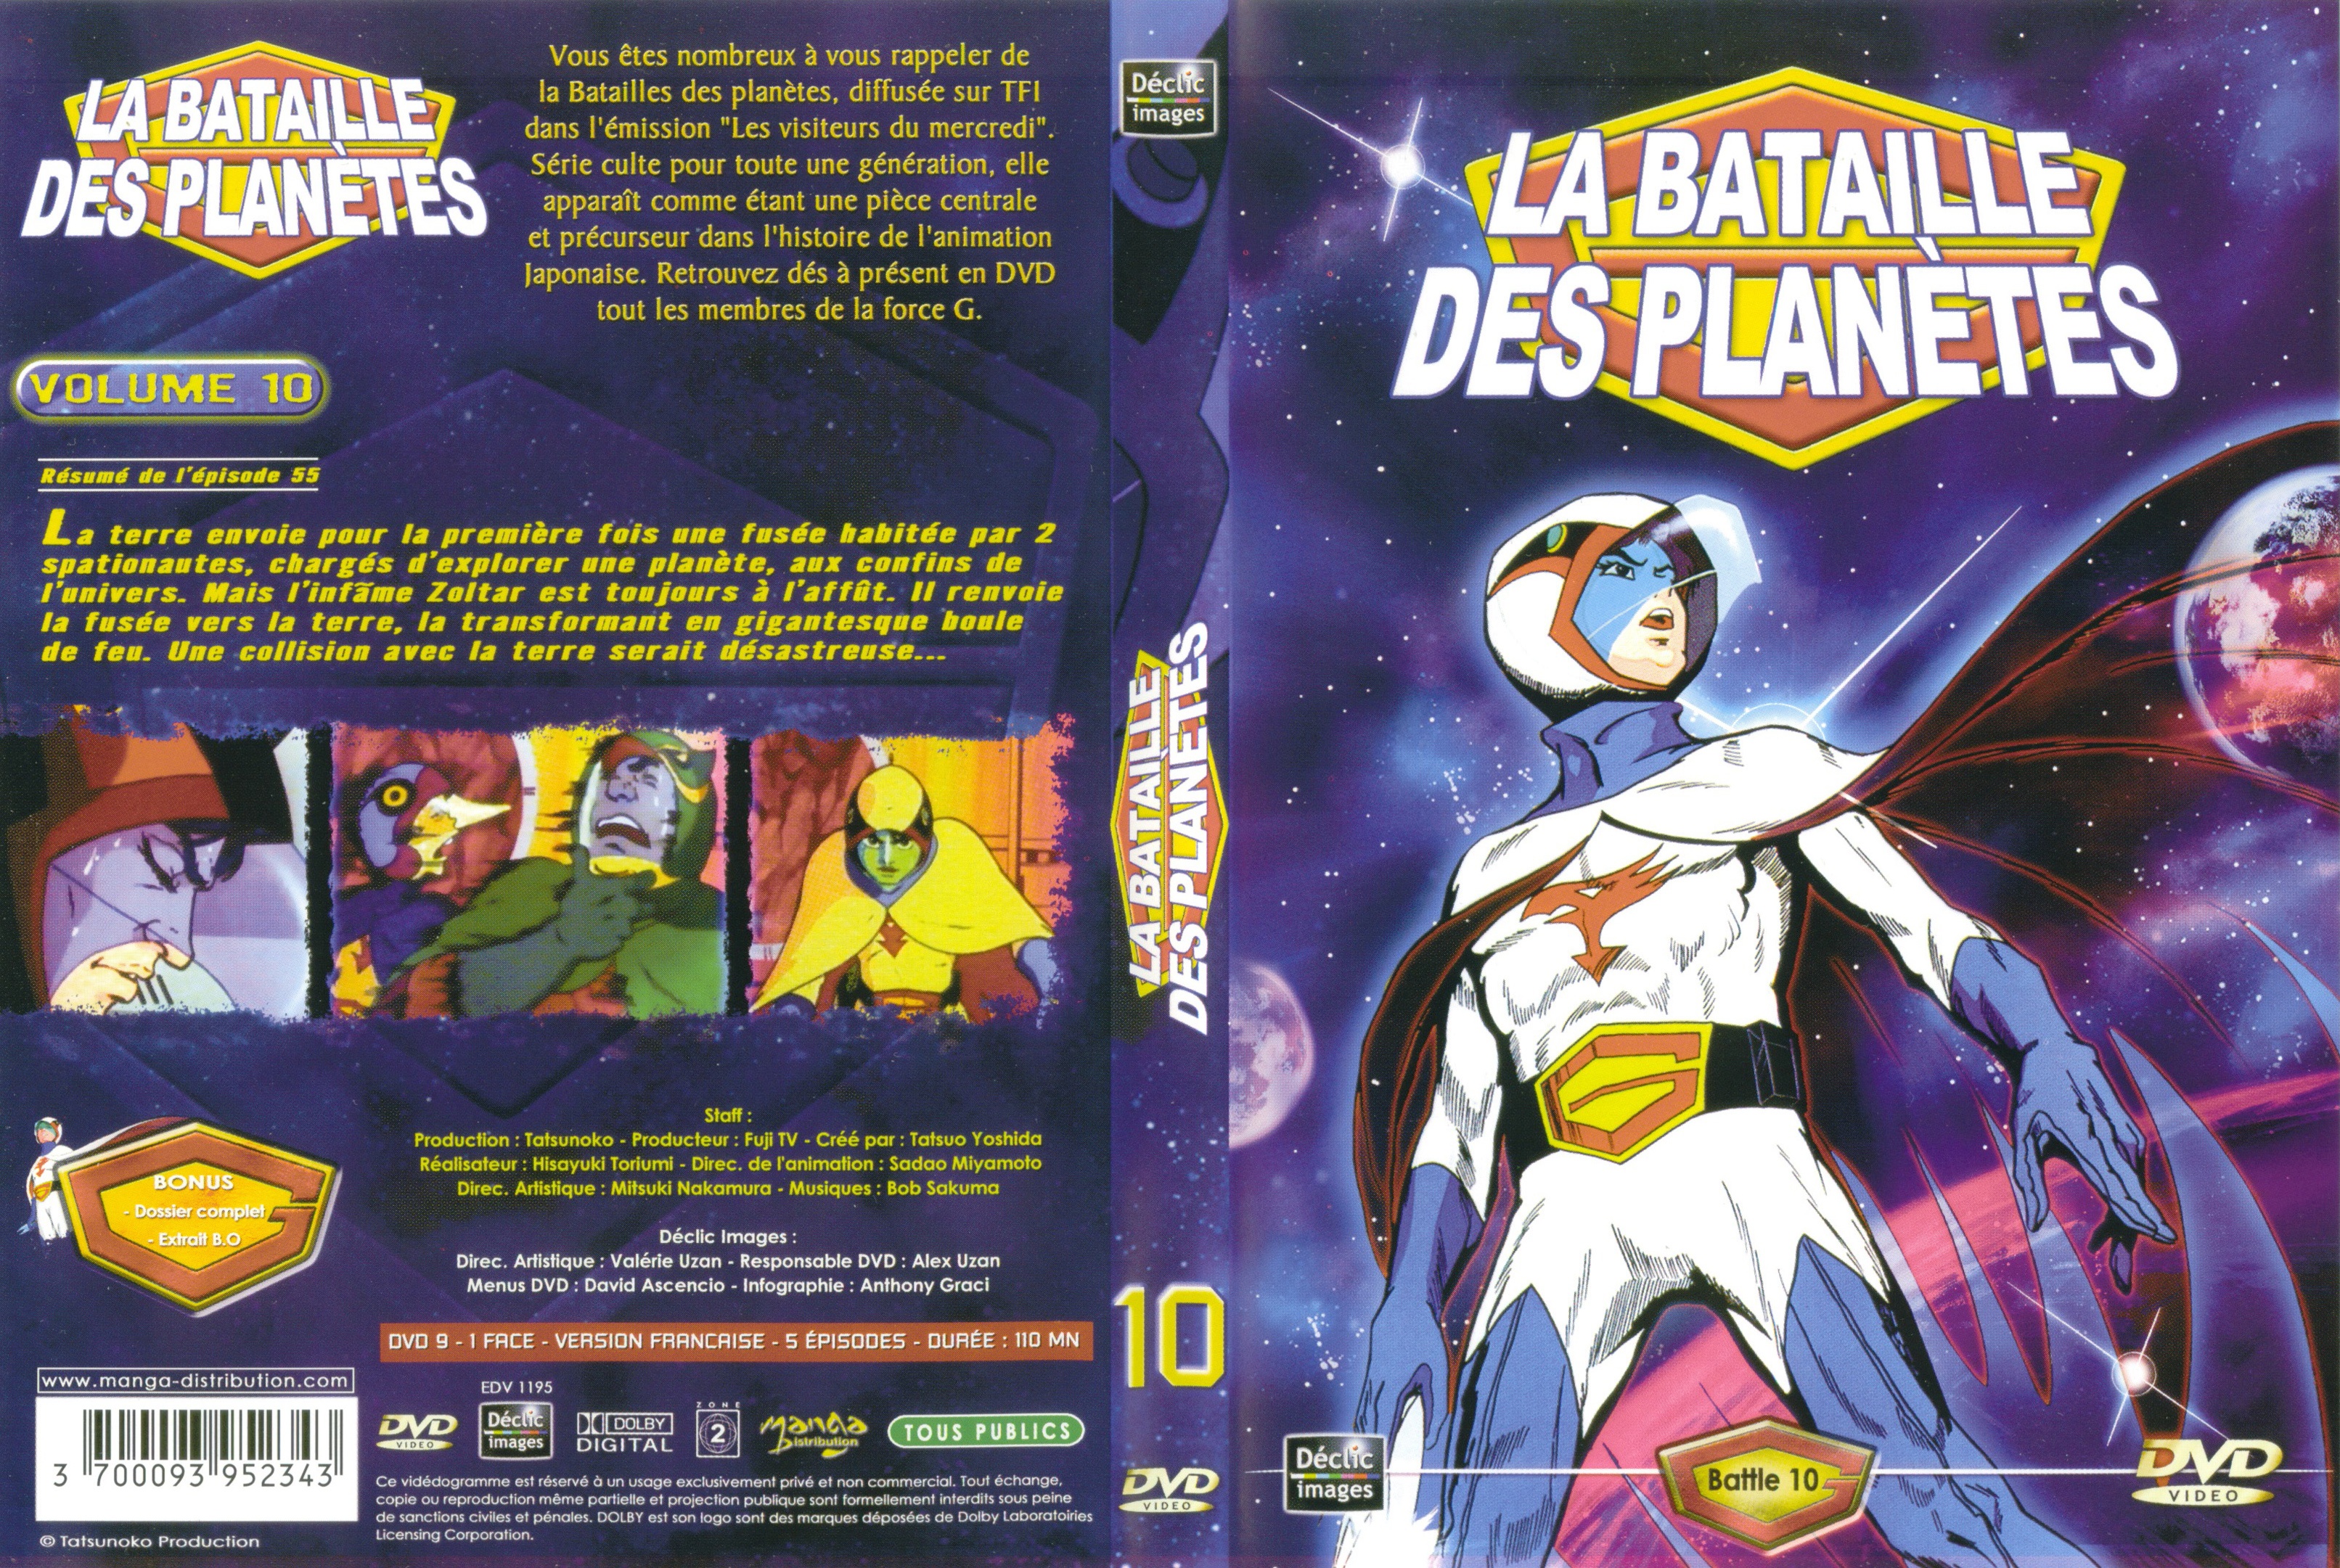 Jaquette DVD La bataille des planetes DVD 10